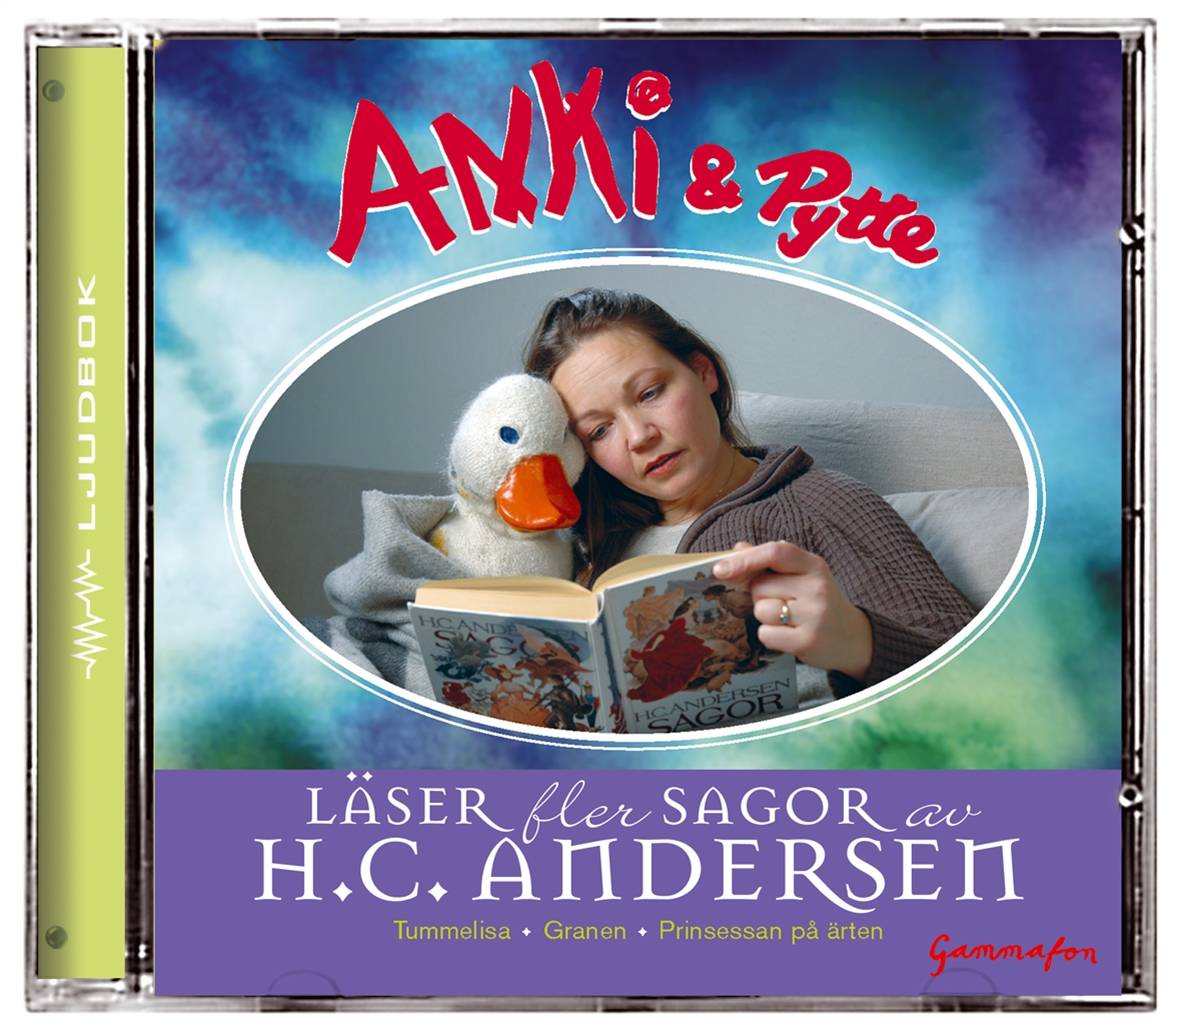 Anki & Pytte läser fler sagor av H. C. Andersen